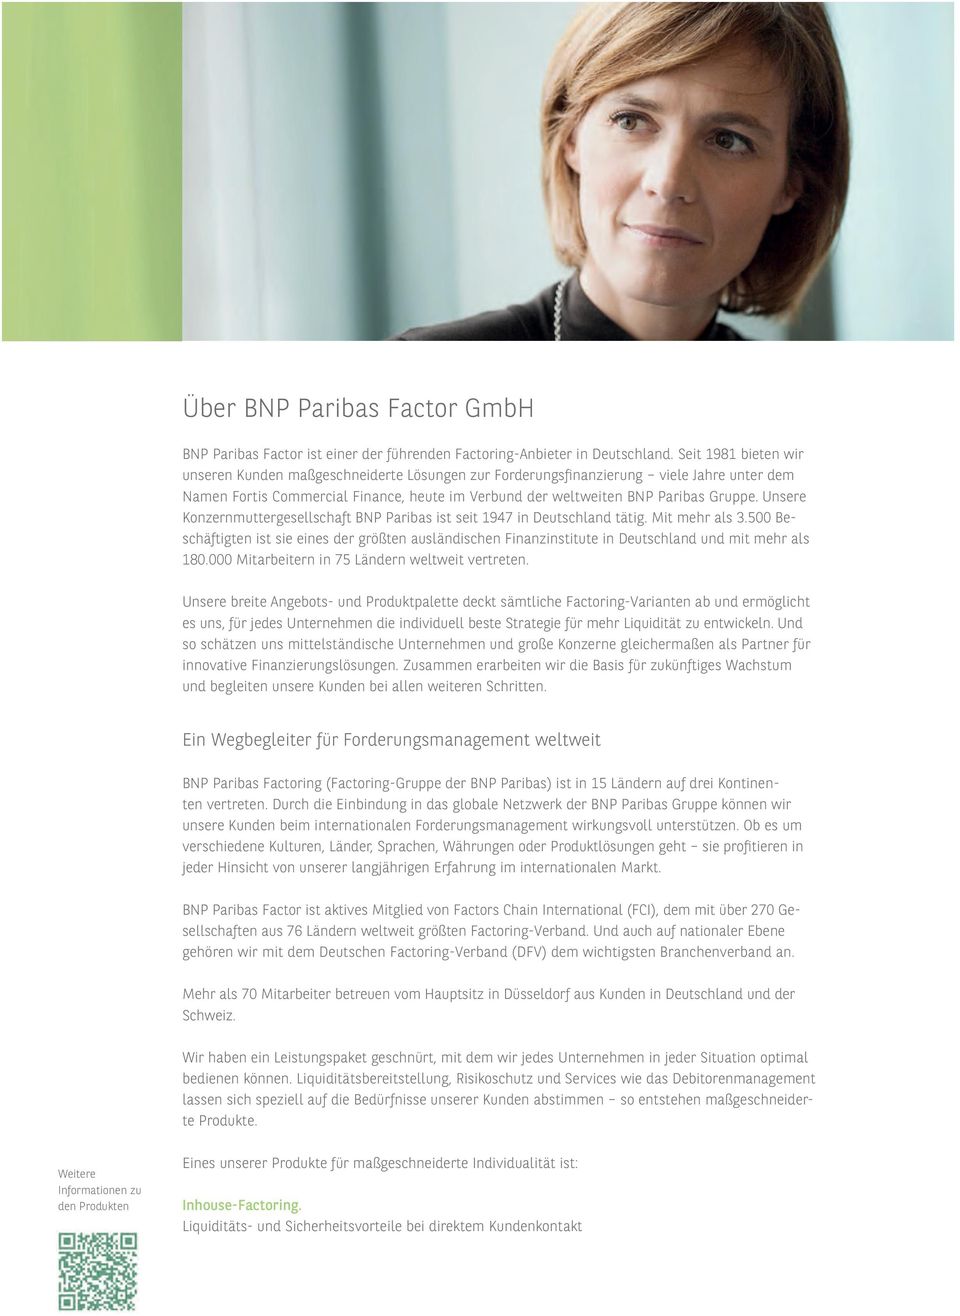 Unsere Konzernmuttergesellschaft BNP Paribas ist seit 1947 in Deutschland tätig. Mit mehr als 3.